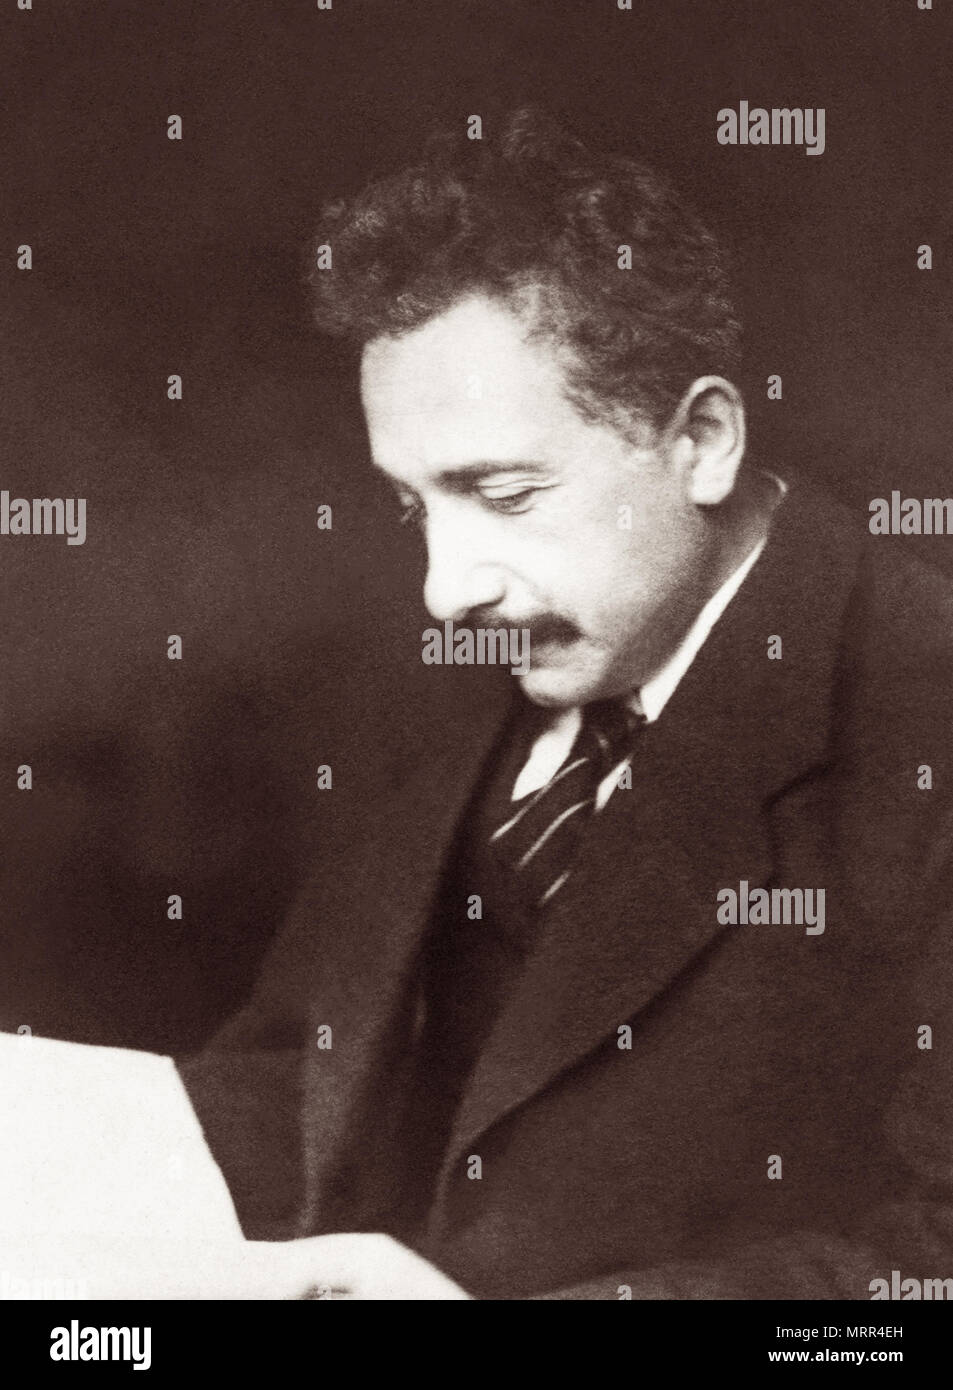 Albert Einstein (1879-1955) fue un físico teórico que ganó el Premio Nobel de Física de 1921 y desarrolló la teoría de la relatividad. Foto de stock